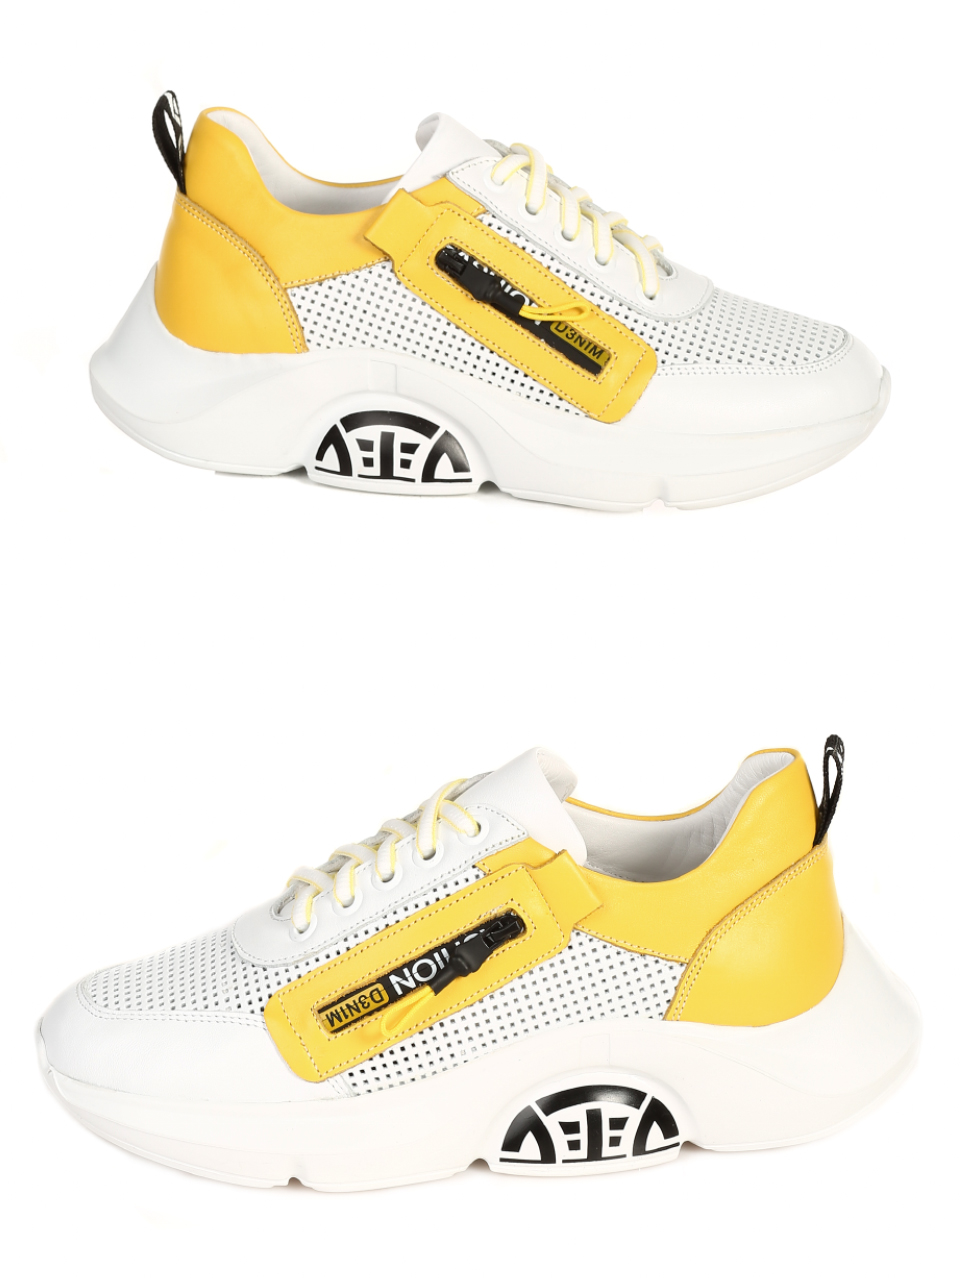  3AT-21306 white/yellow